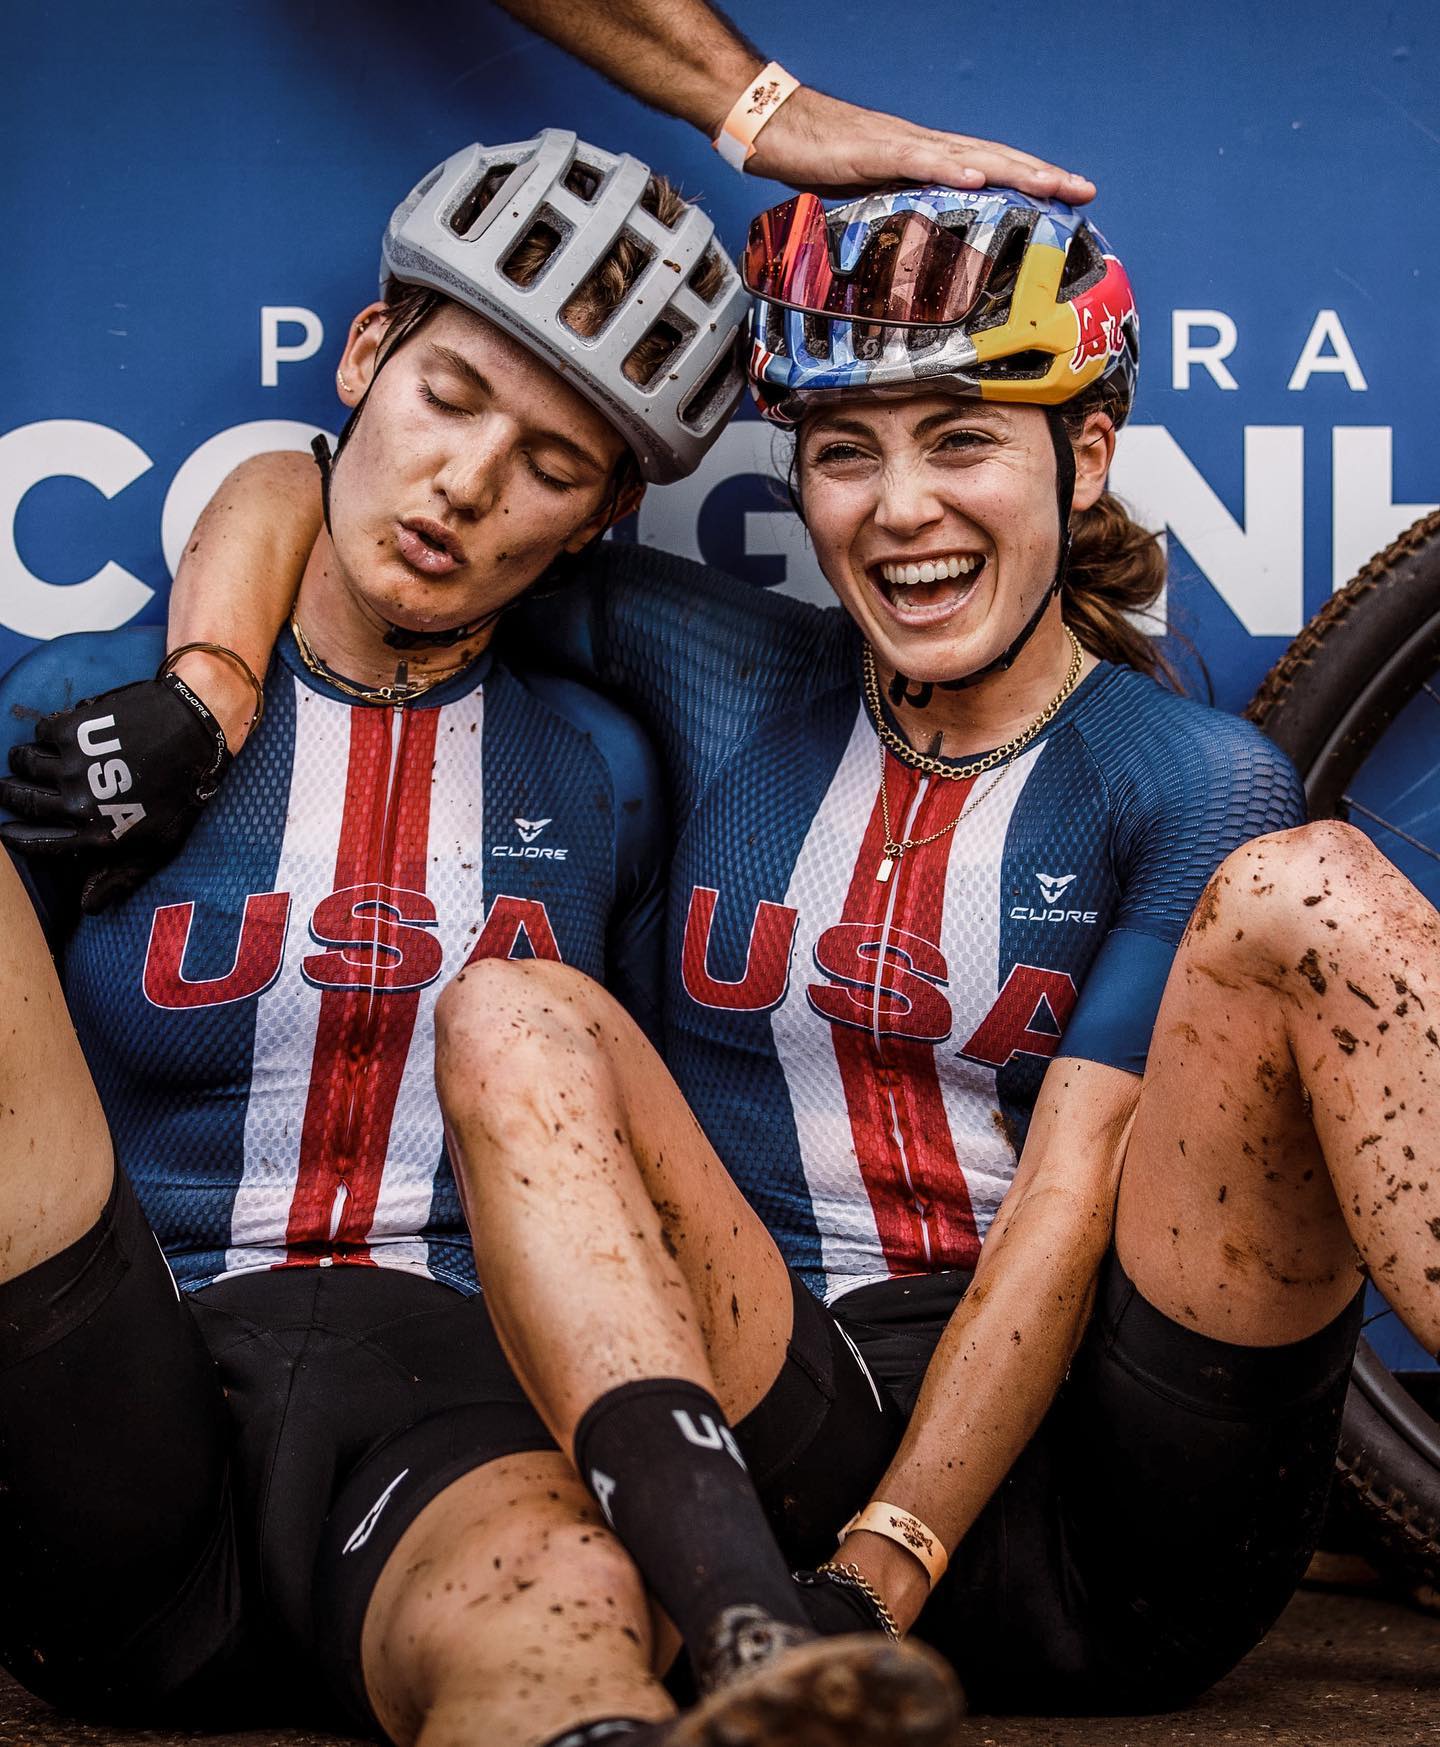 Kelsen e Kaate levam prata e ouro para os Estados UnidosFoto: Divulgação da atleta Kate Counterny